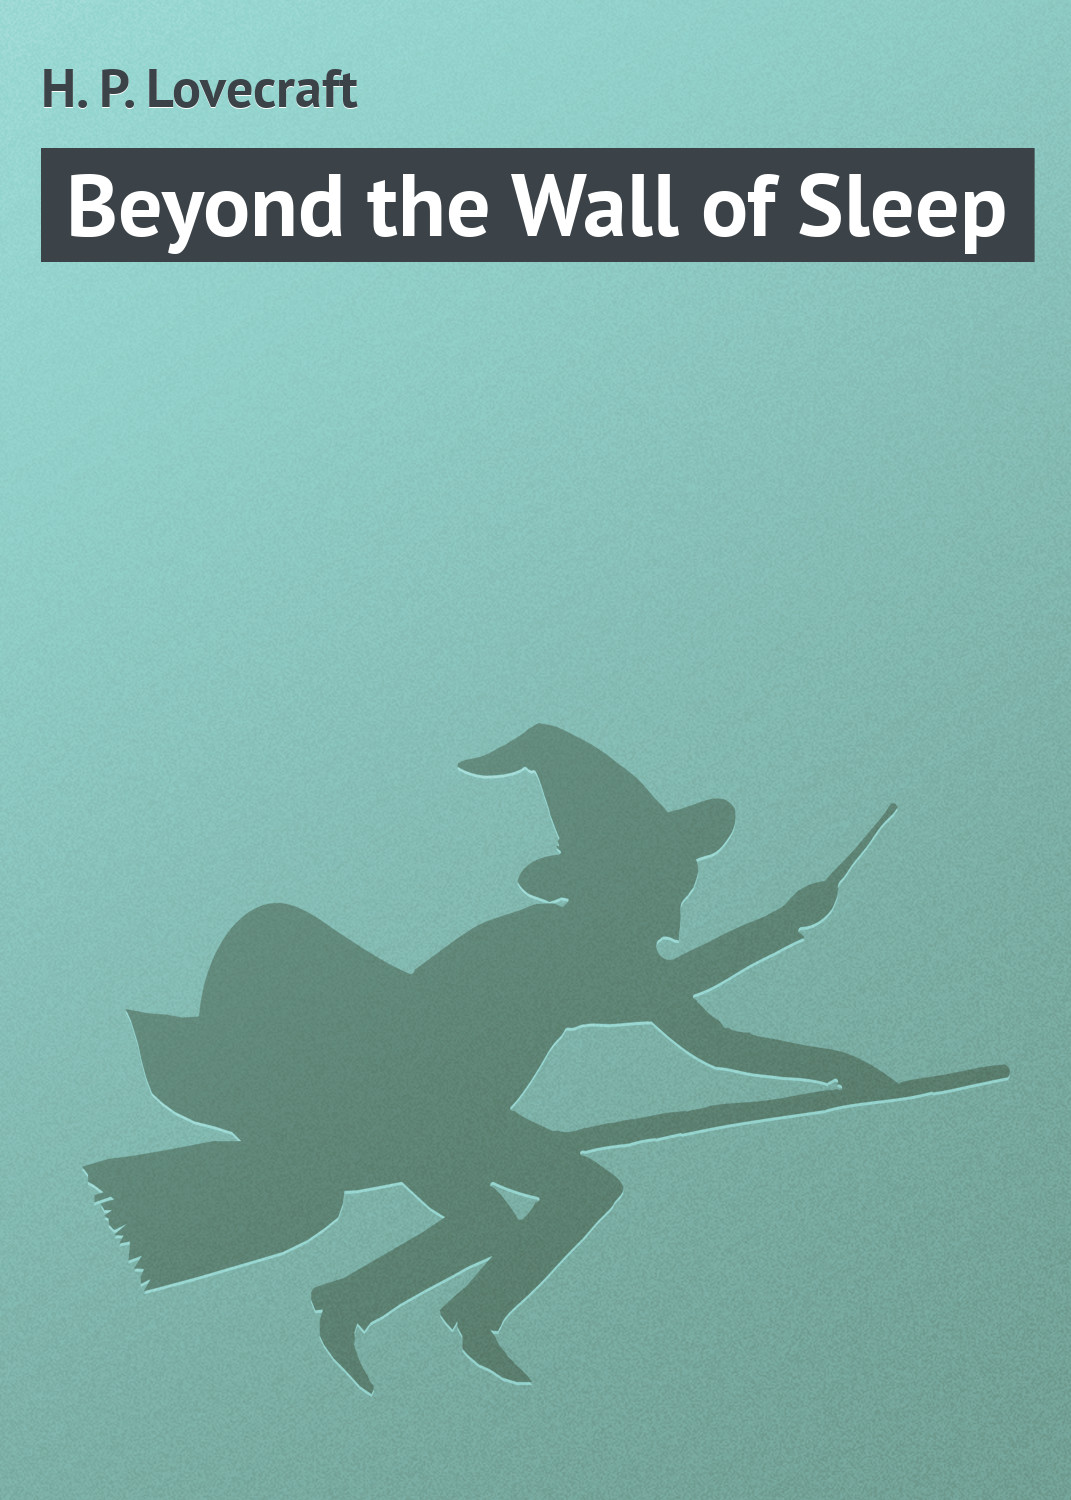 Книга Beyond the Wall of Sleep из серии , созданная H. Lovecraft, может относится к жанру Зарубежное: Прочее, Зарубежная классика, Ужасы и Мистика. Стоимость электронной книги Beyond the Wall of Sleep с идентификатором 7769591 составляет 29.95 руб.